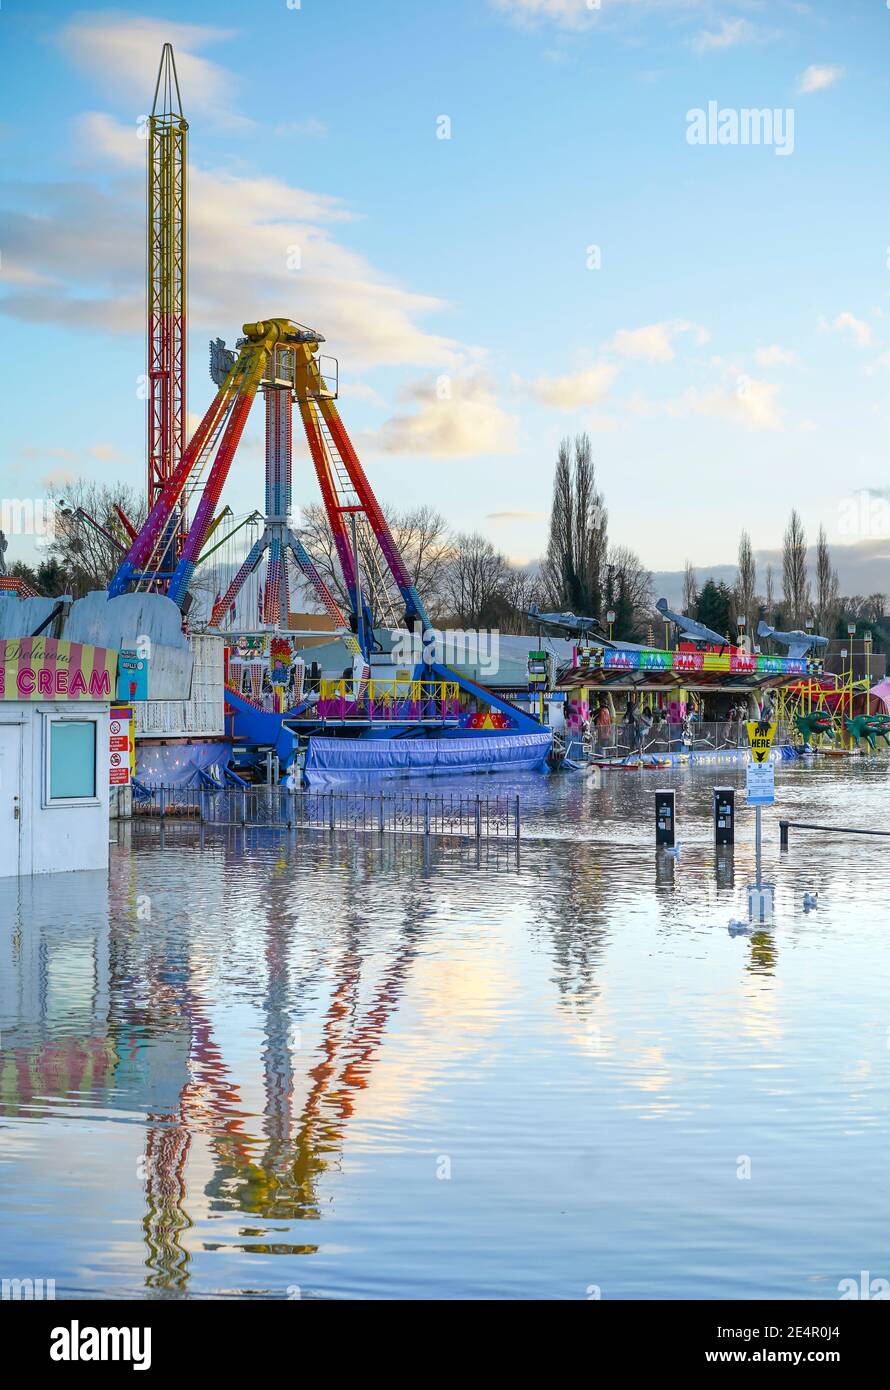 Stourport-on-Severn, Royaume-Uni. 23 janvier 2021. Les eaux d'inondation de Stourport-on-Severn ont complètement couvert le parking à côté du parc d'expositions ayant plus tôt fait éclater les rives de la rivière. Banque D'Images